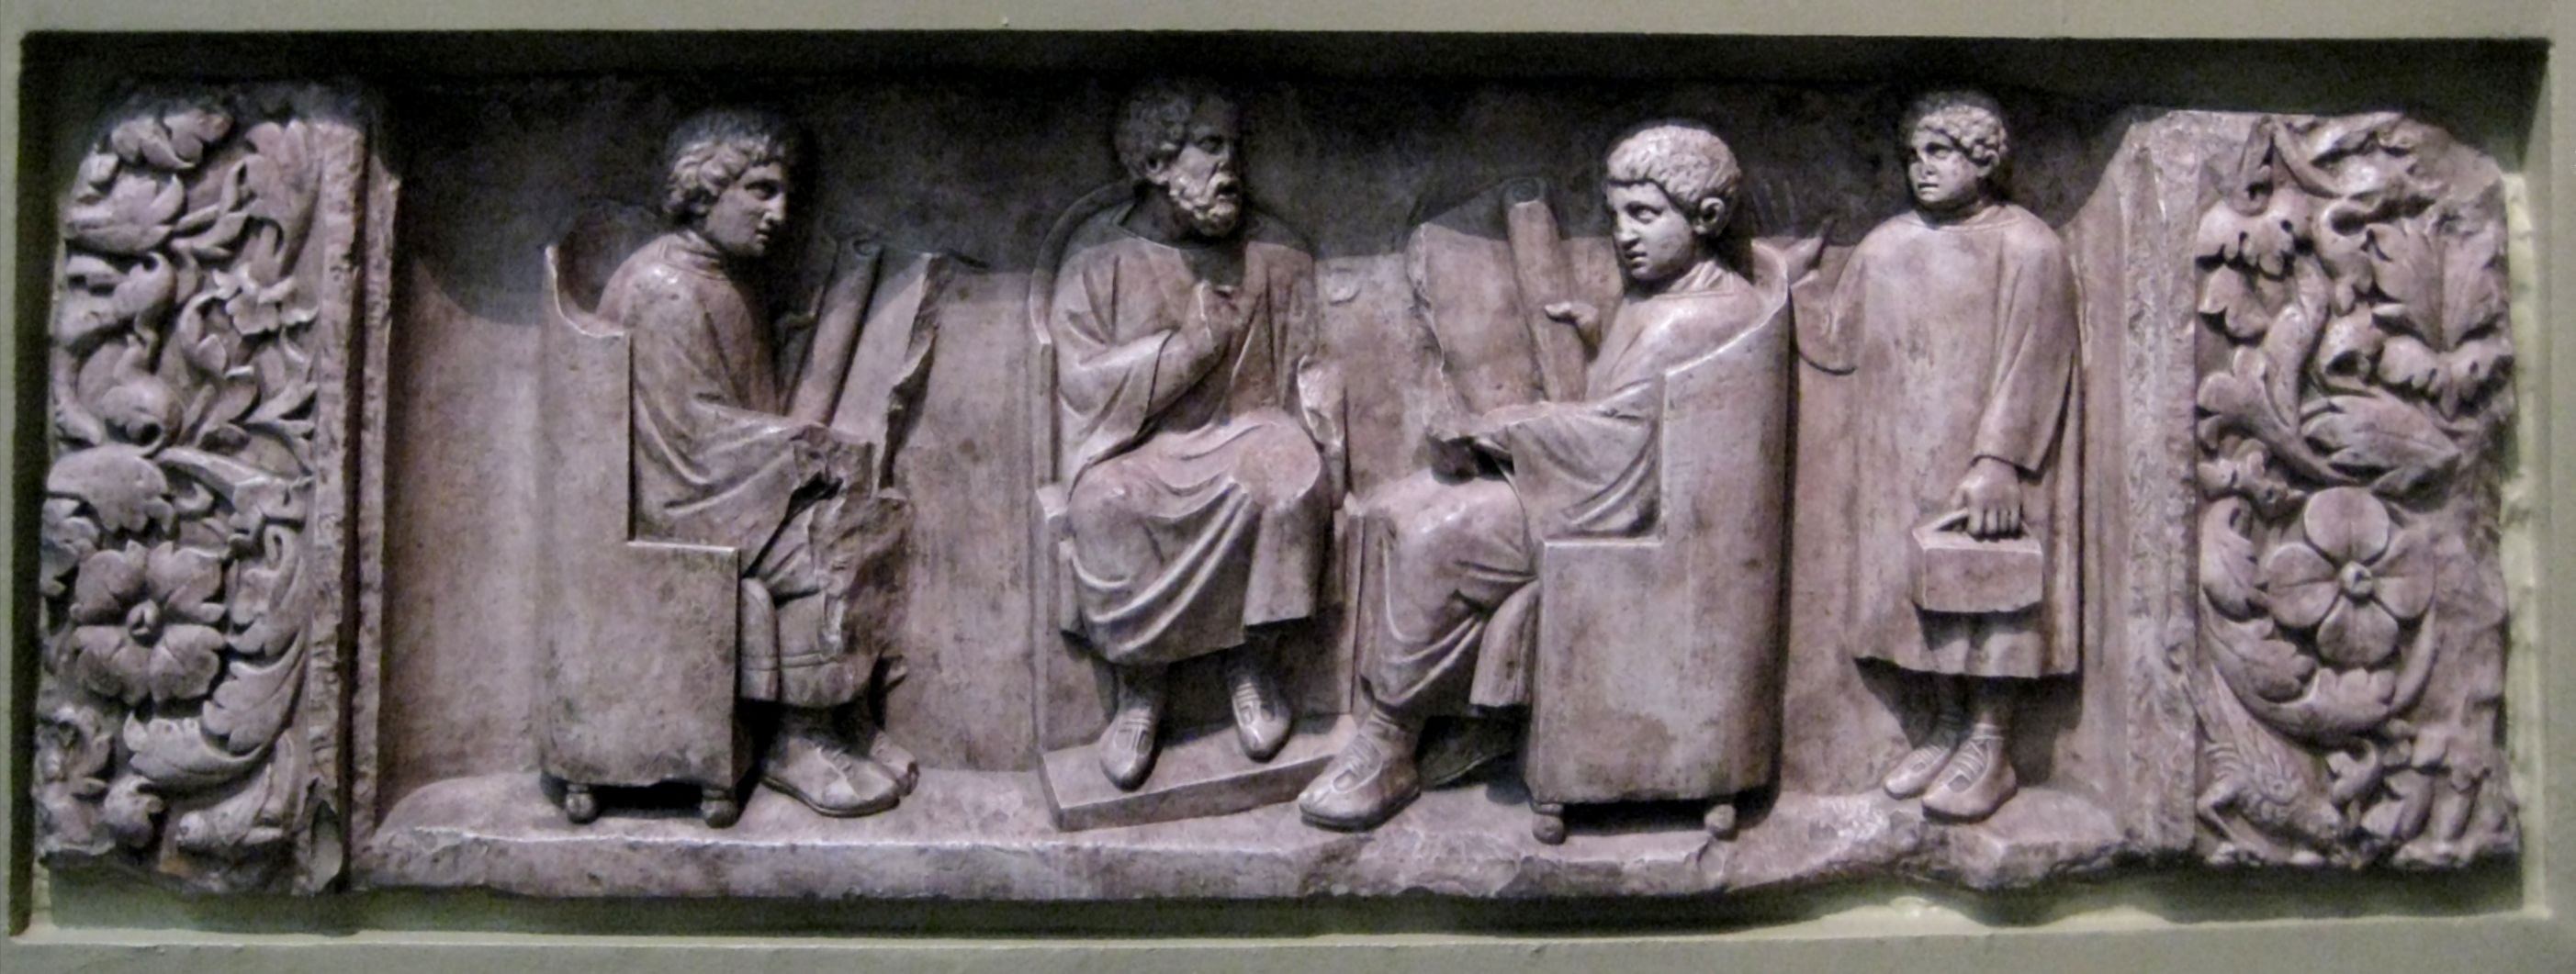 Relieve de los años 180-185 hallado cerca de Trier: muestra a un profesor con tres discípulos. (Shakko/Wikimedia Commons)